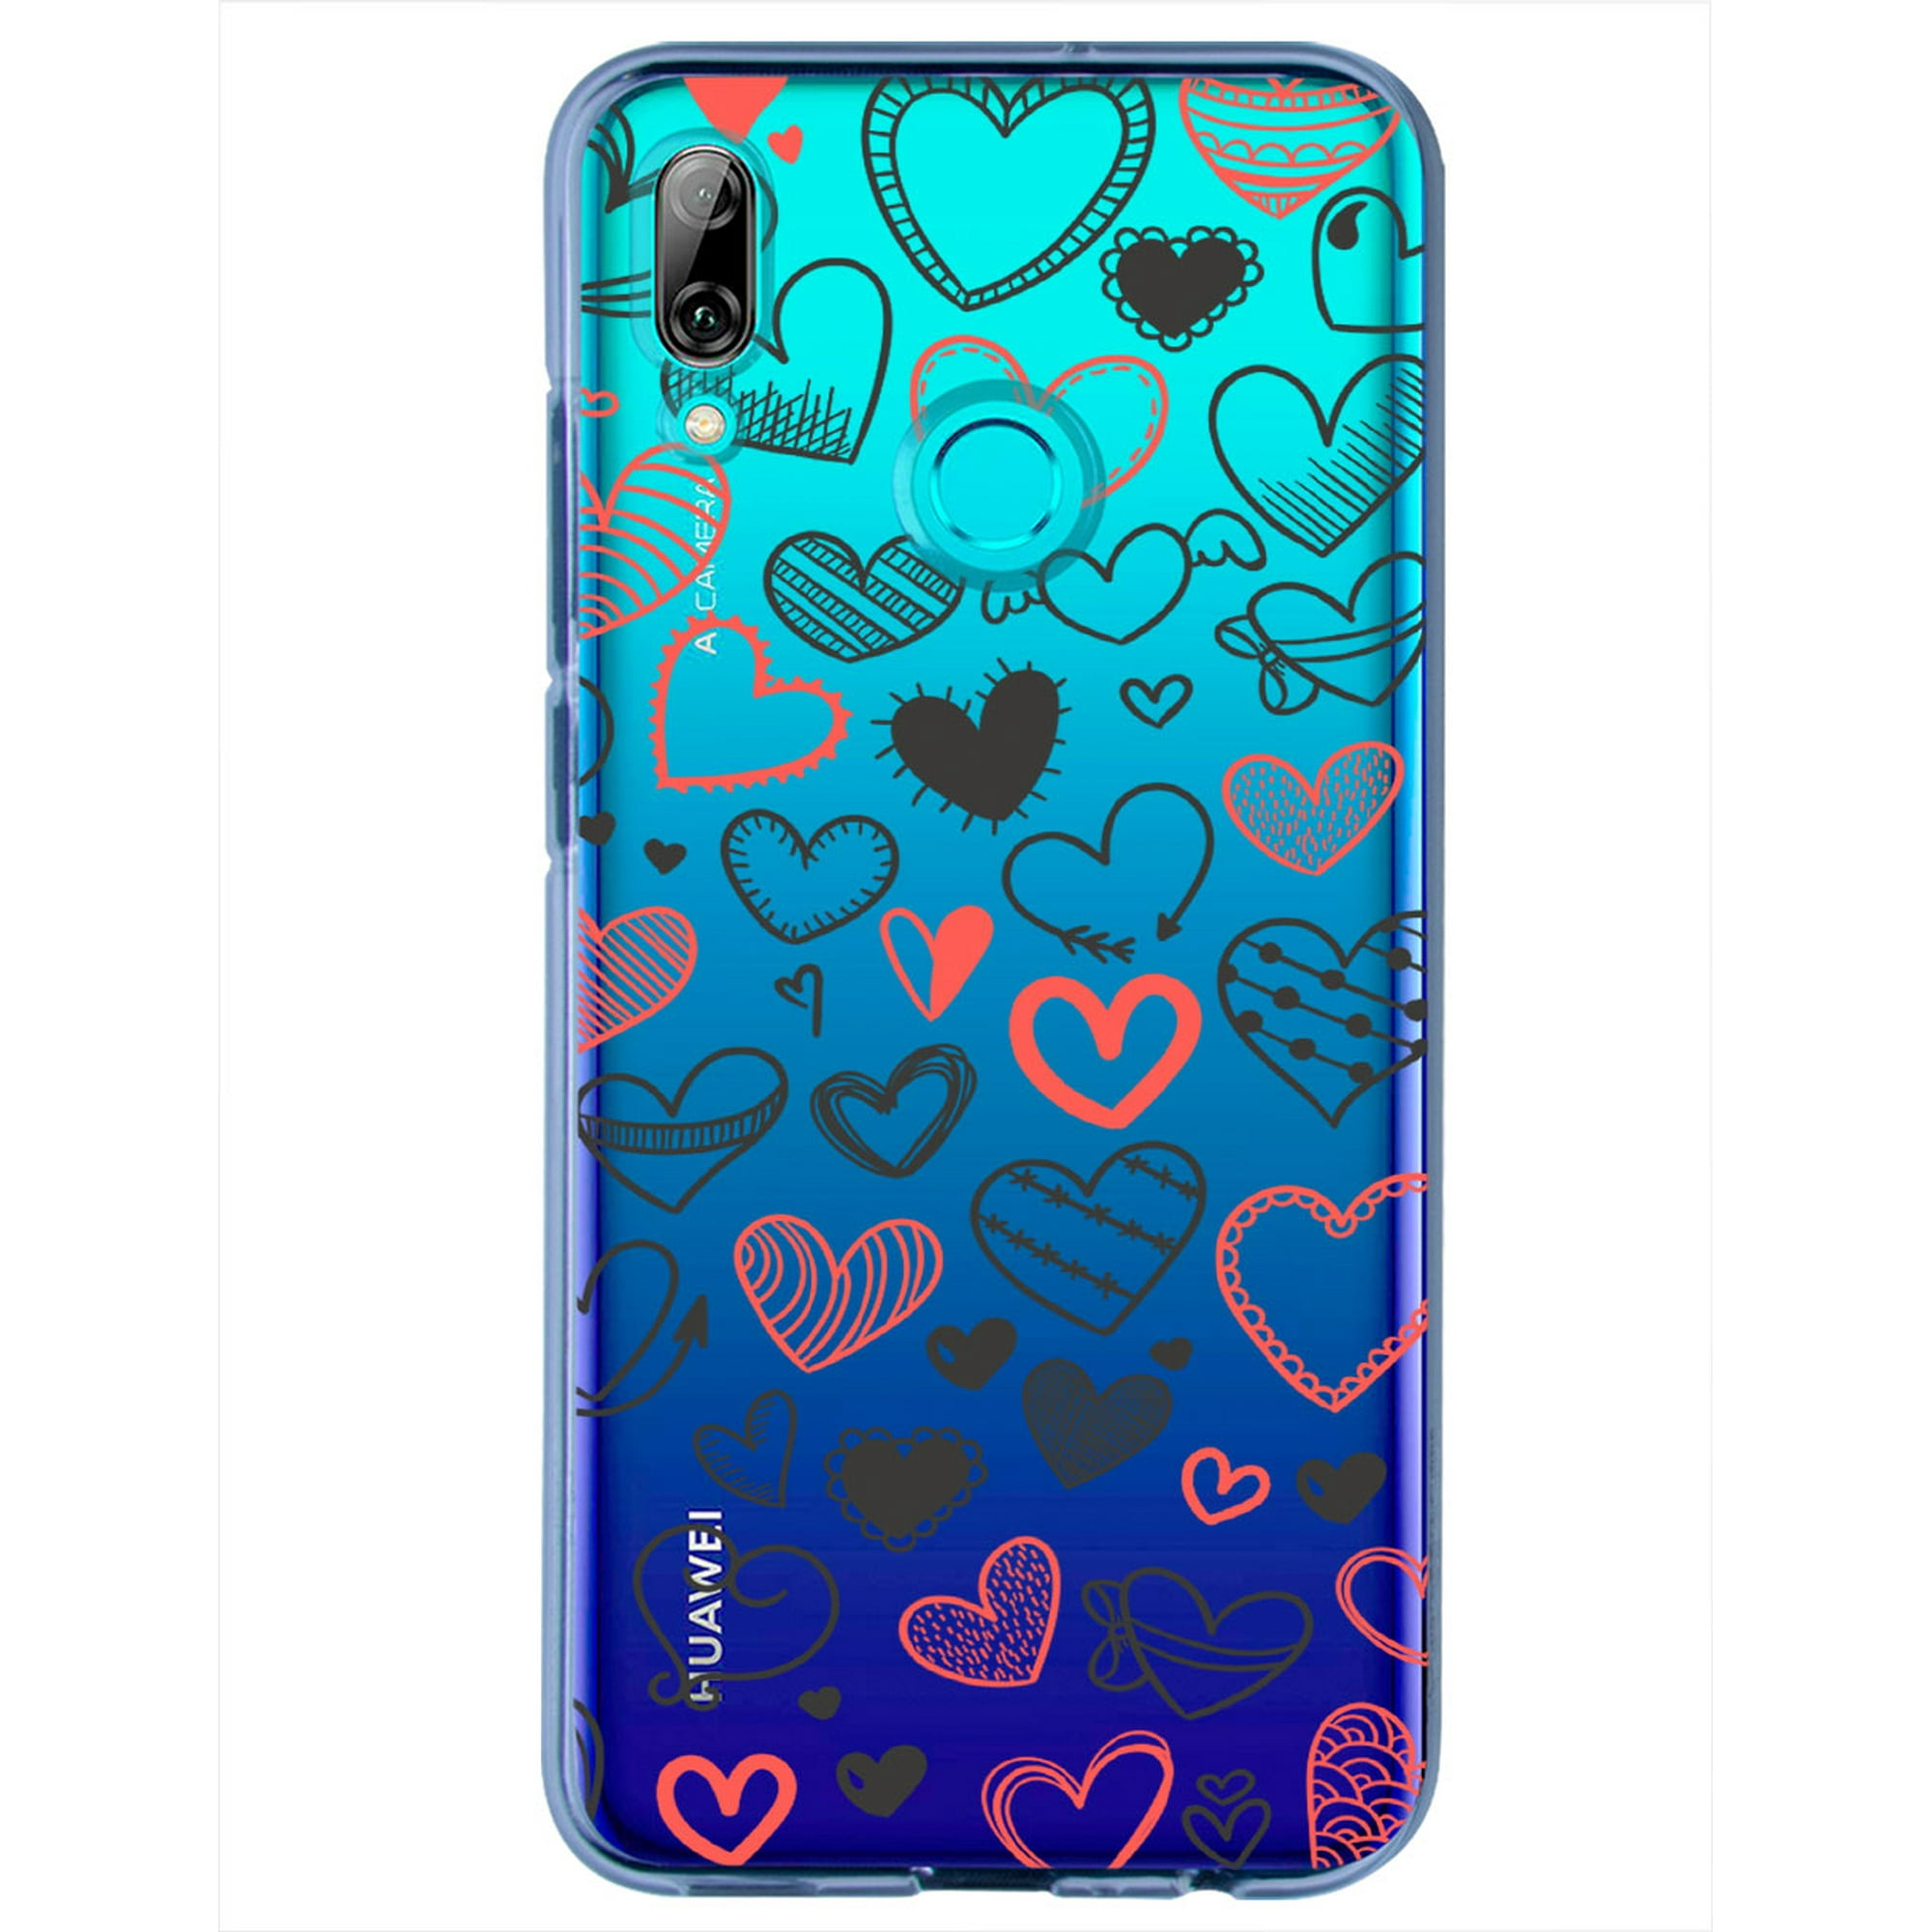 Funda para huawei p smart 2019 con diseño corazones lienas instacase love collection